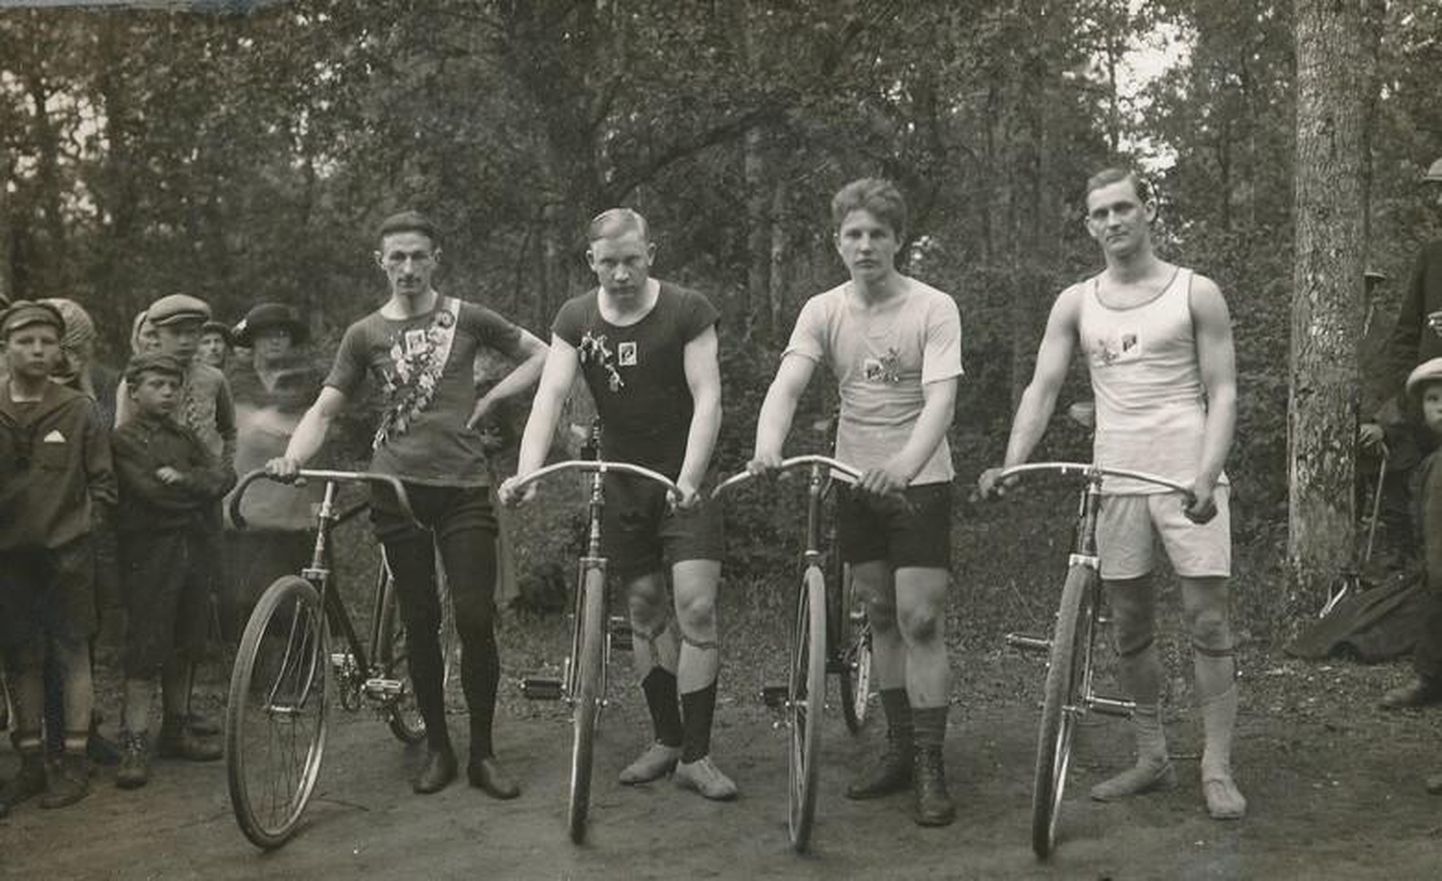 Rakvere tammikus peetud jalgrattavõistluse võitjad: vasakult Ivan Ivanov, Leonhard Friedrich Kuivkaev, Talpak ja Laast. Aasta oli 1925.